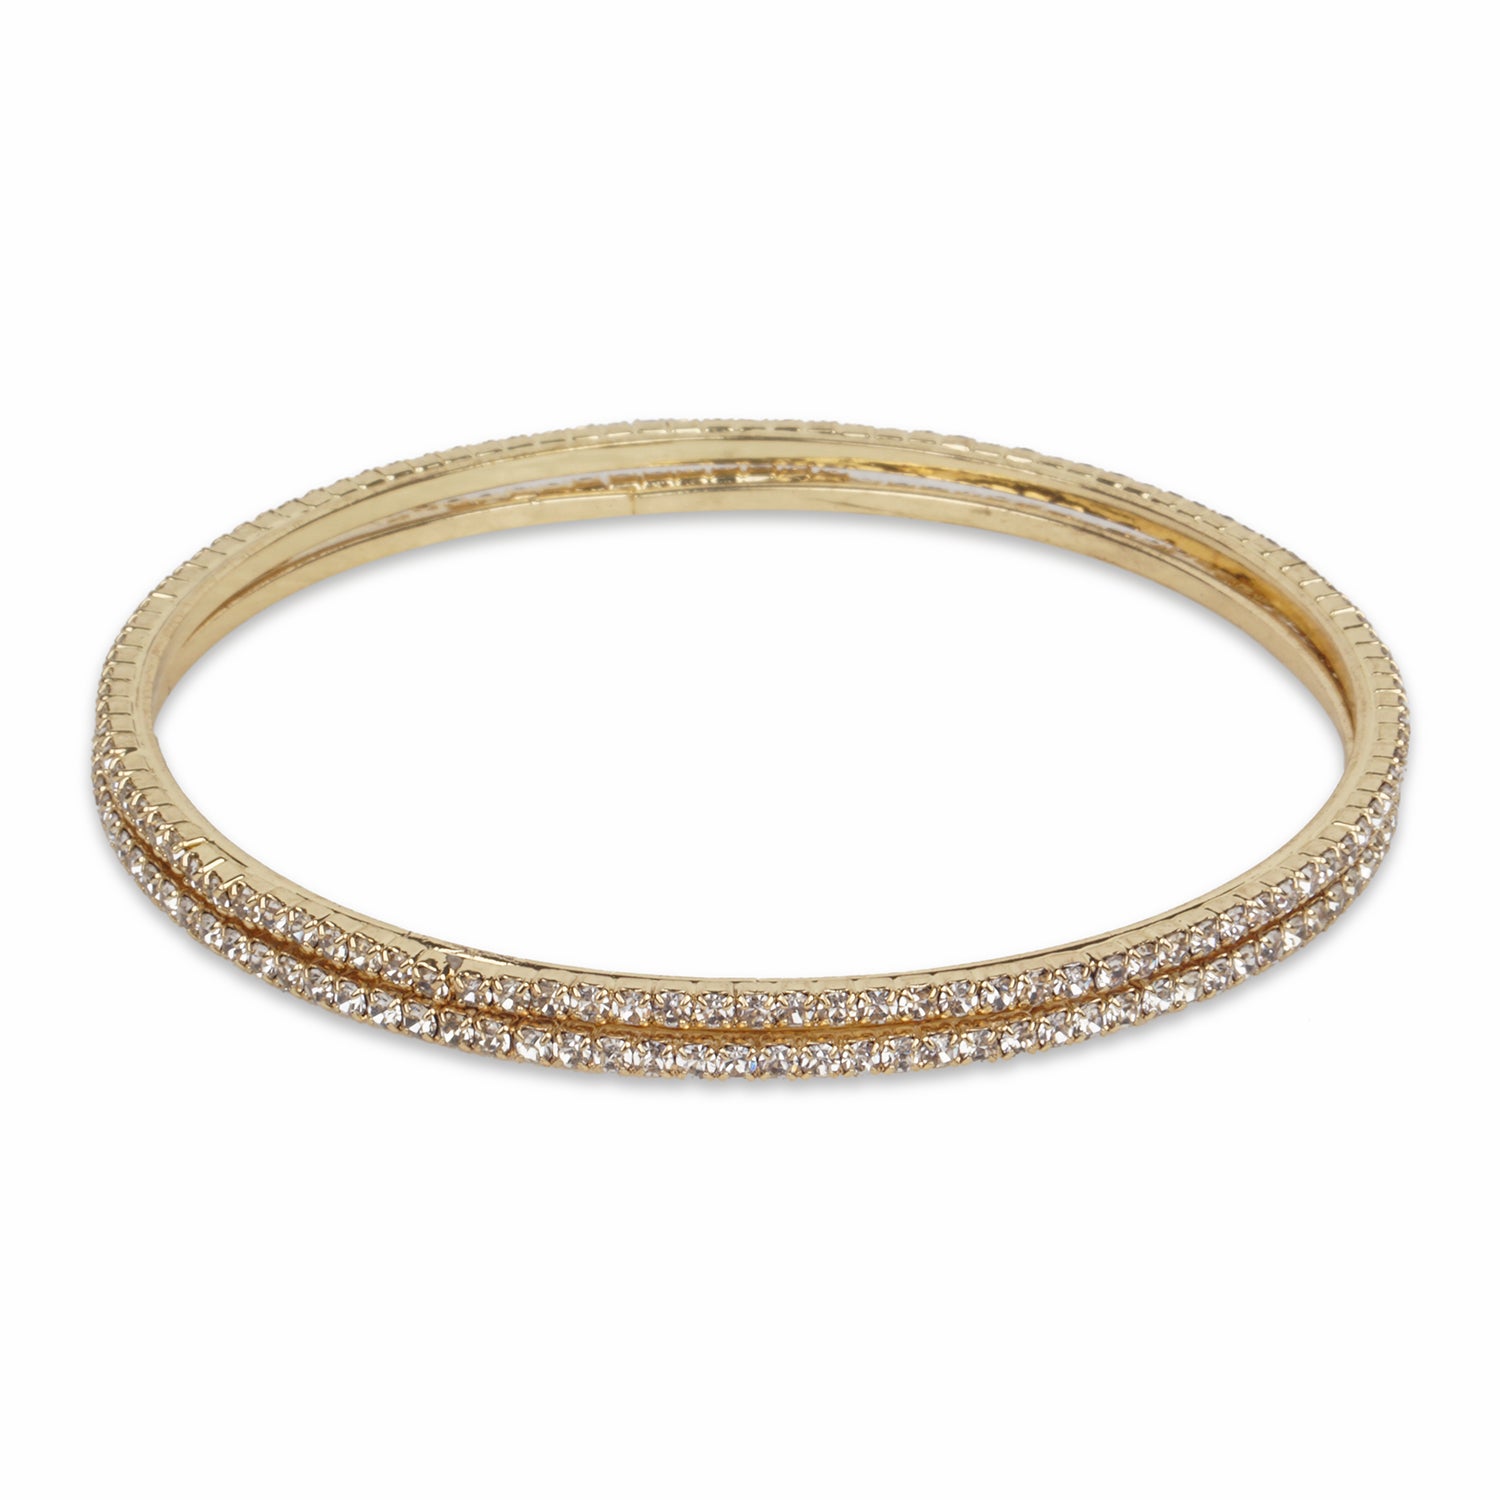 Buy quality Ladies 22K Gold Delicate BraceletLB95 in Ahmedabad